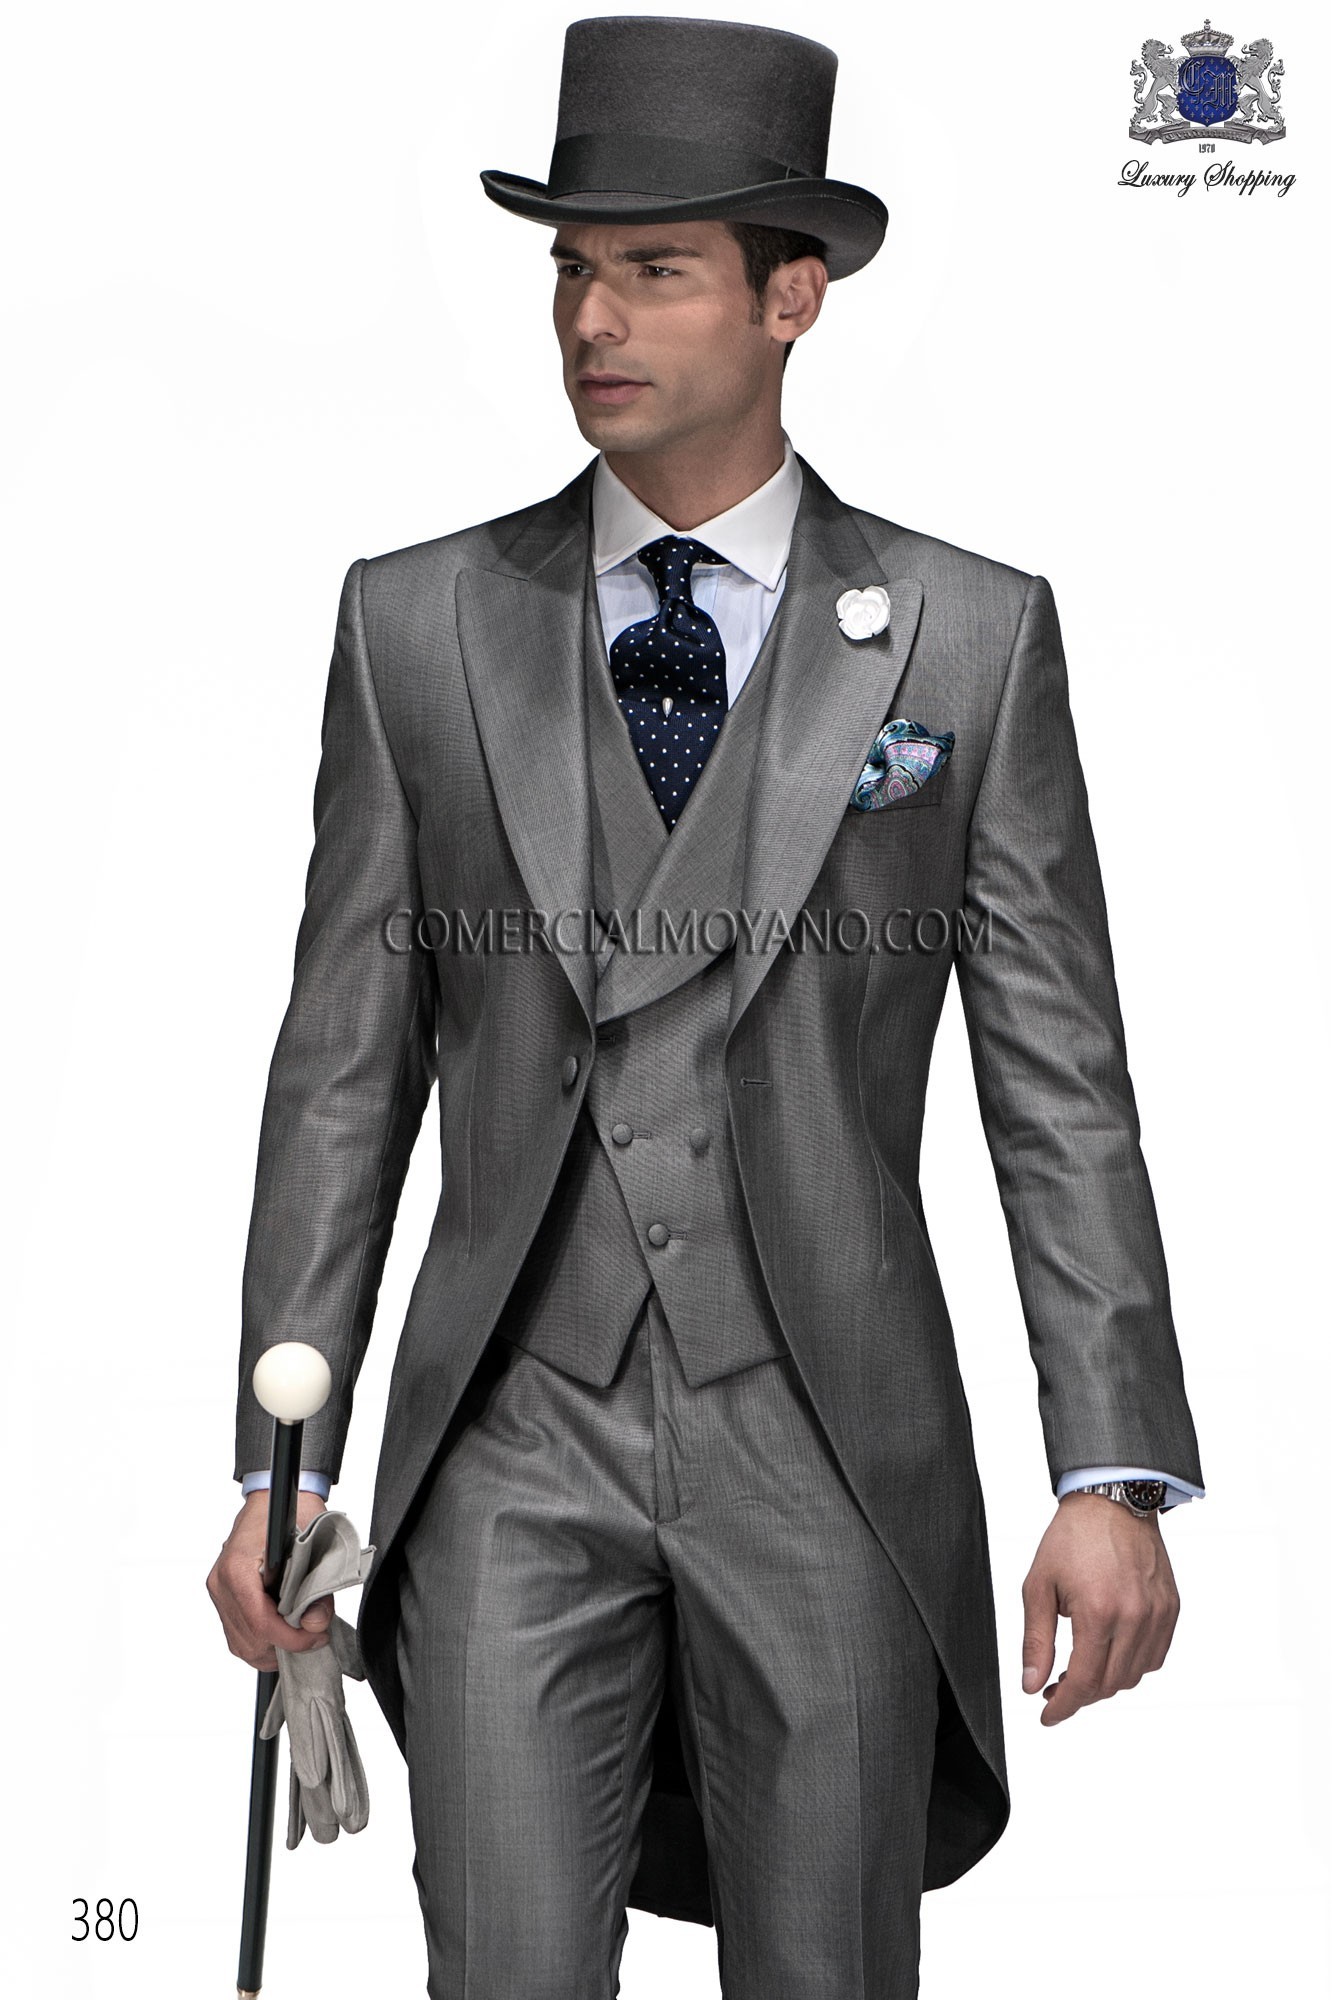 Traje Gentleman de novio gris modelo: 380 Mario Moyano colección Gentleman